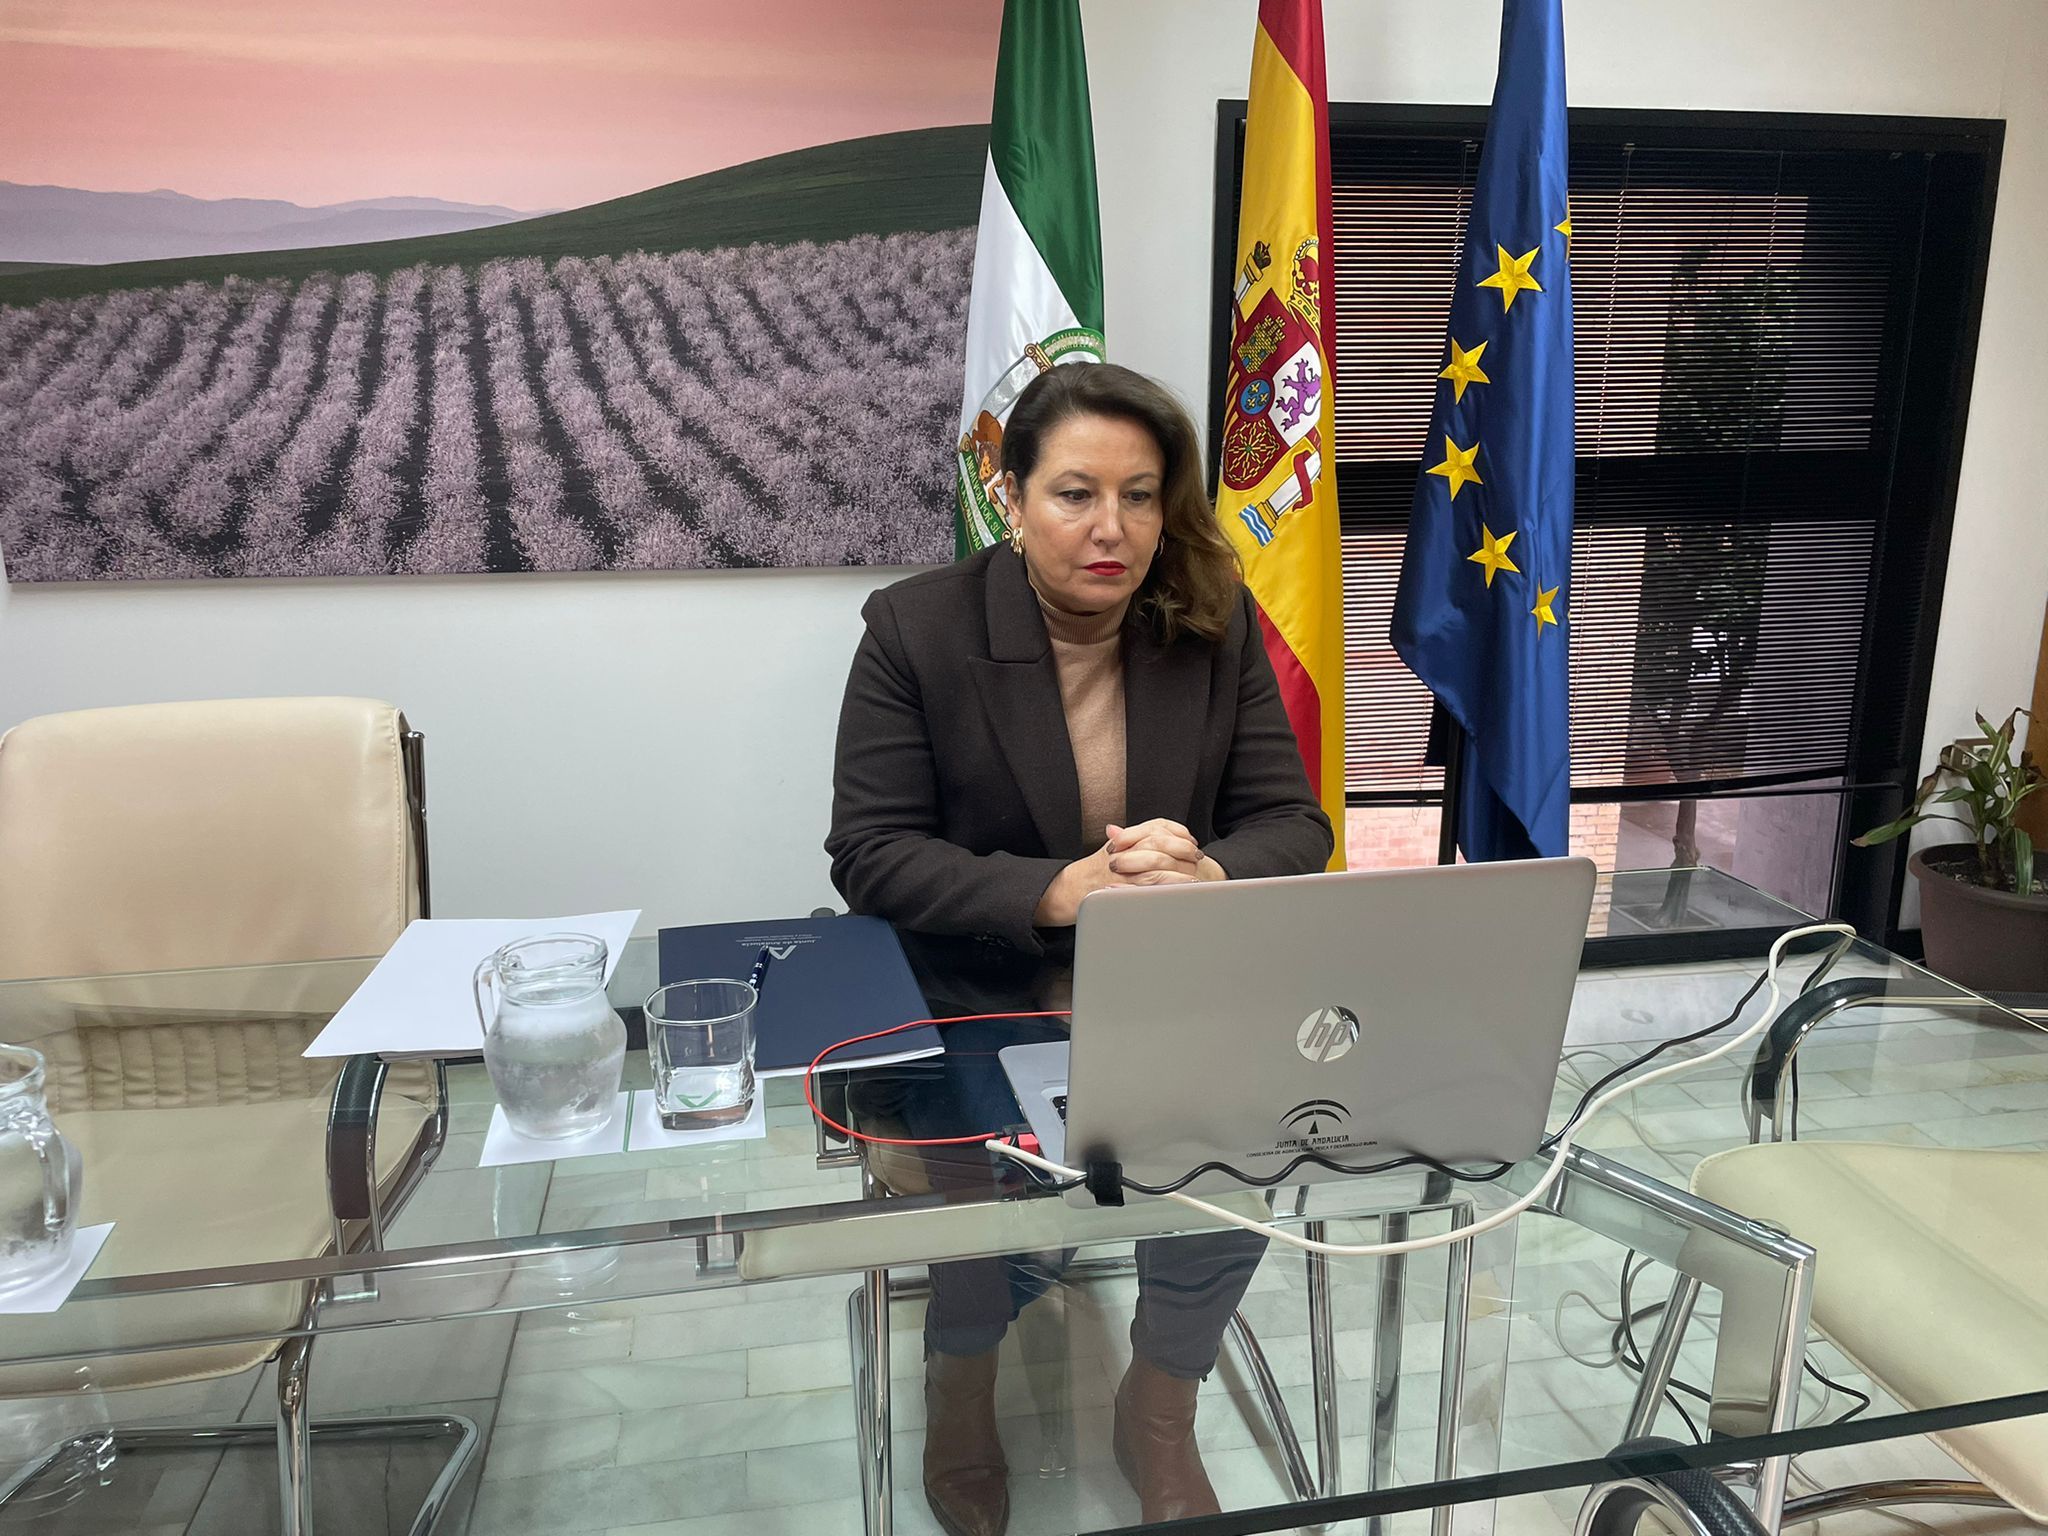 La Junta pide más fondos europeos para regadío y para hacer frente a la sequía. Carmen Crespo en el Consejo Consultivo.